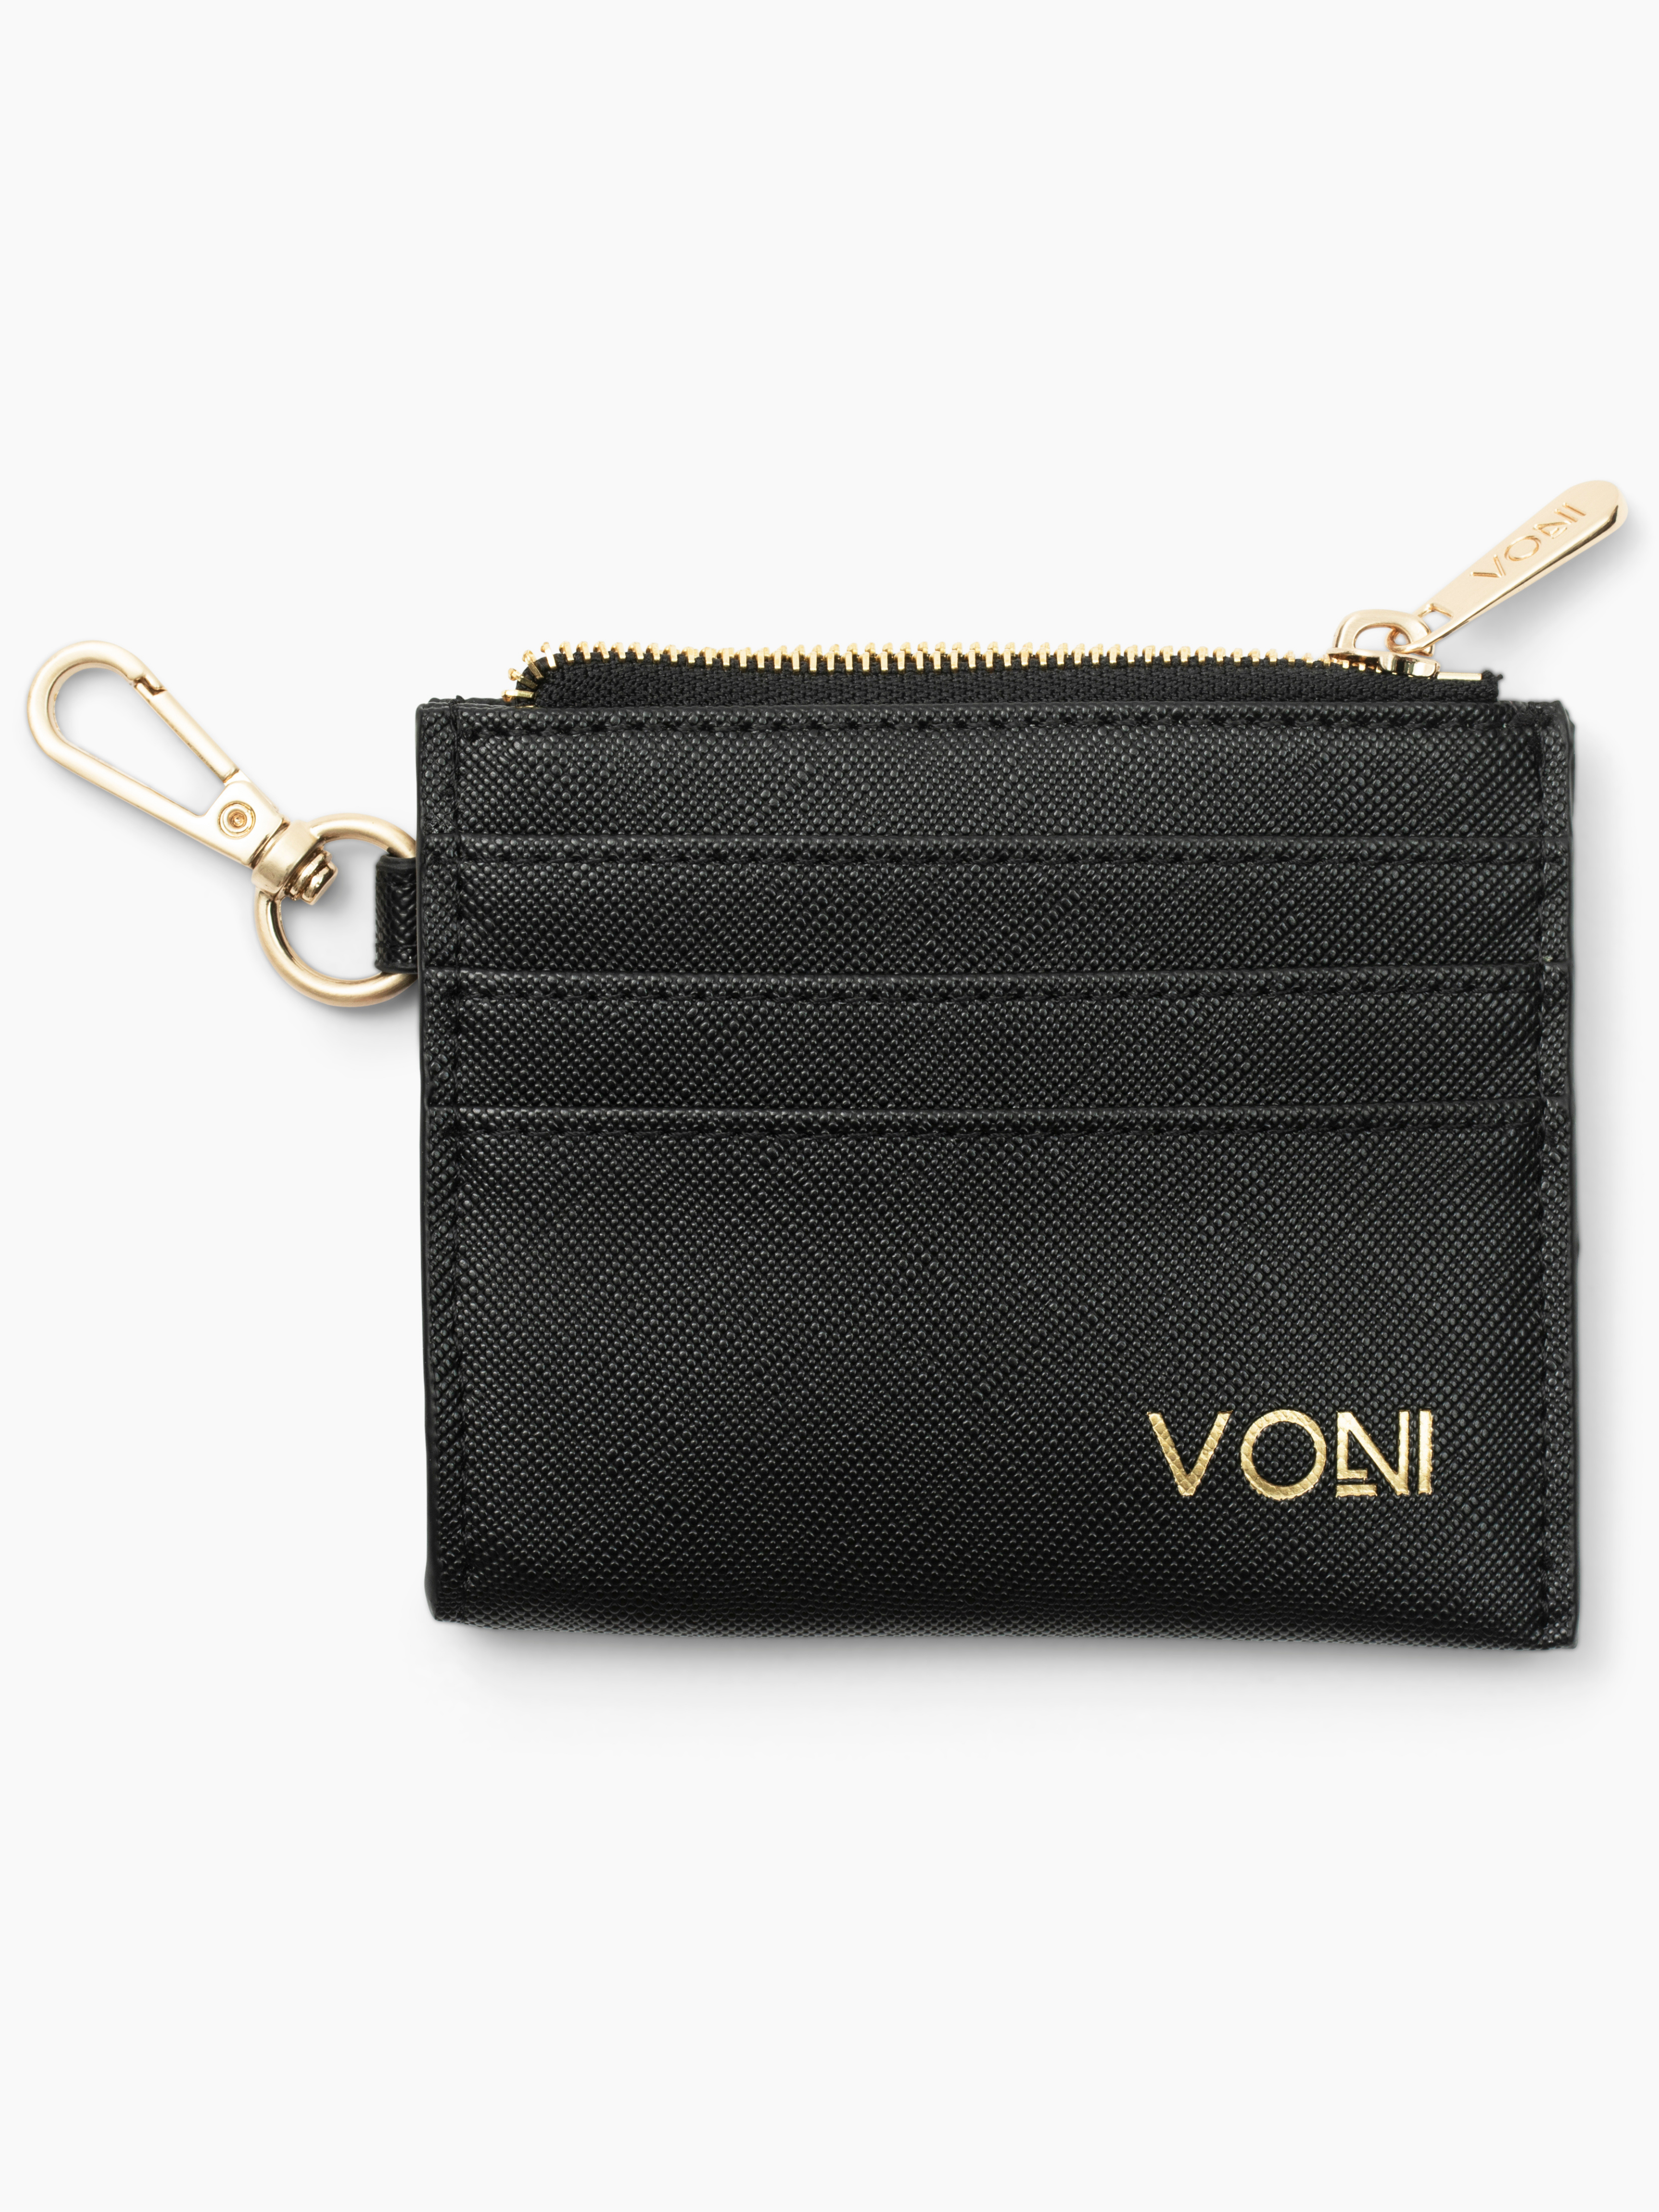 Louis Vuitton Unisex Vintage Zippy Compact Square Wallet Black Taiga L -  Shop Linda's Stuff